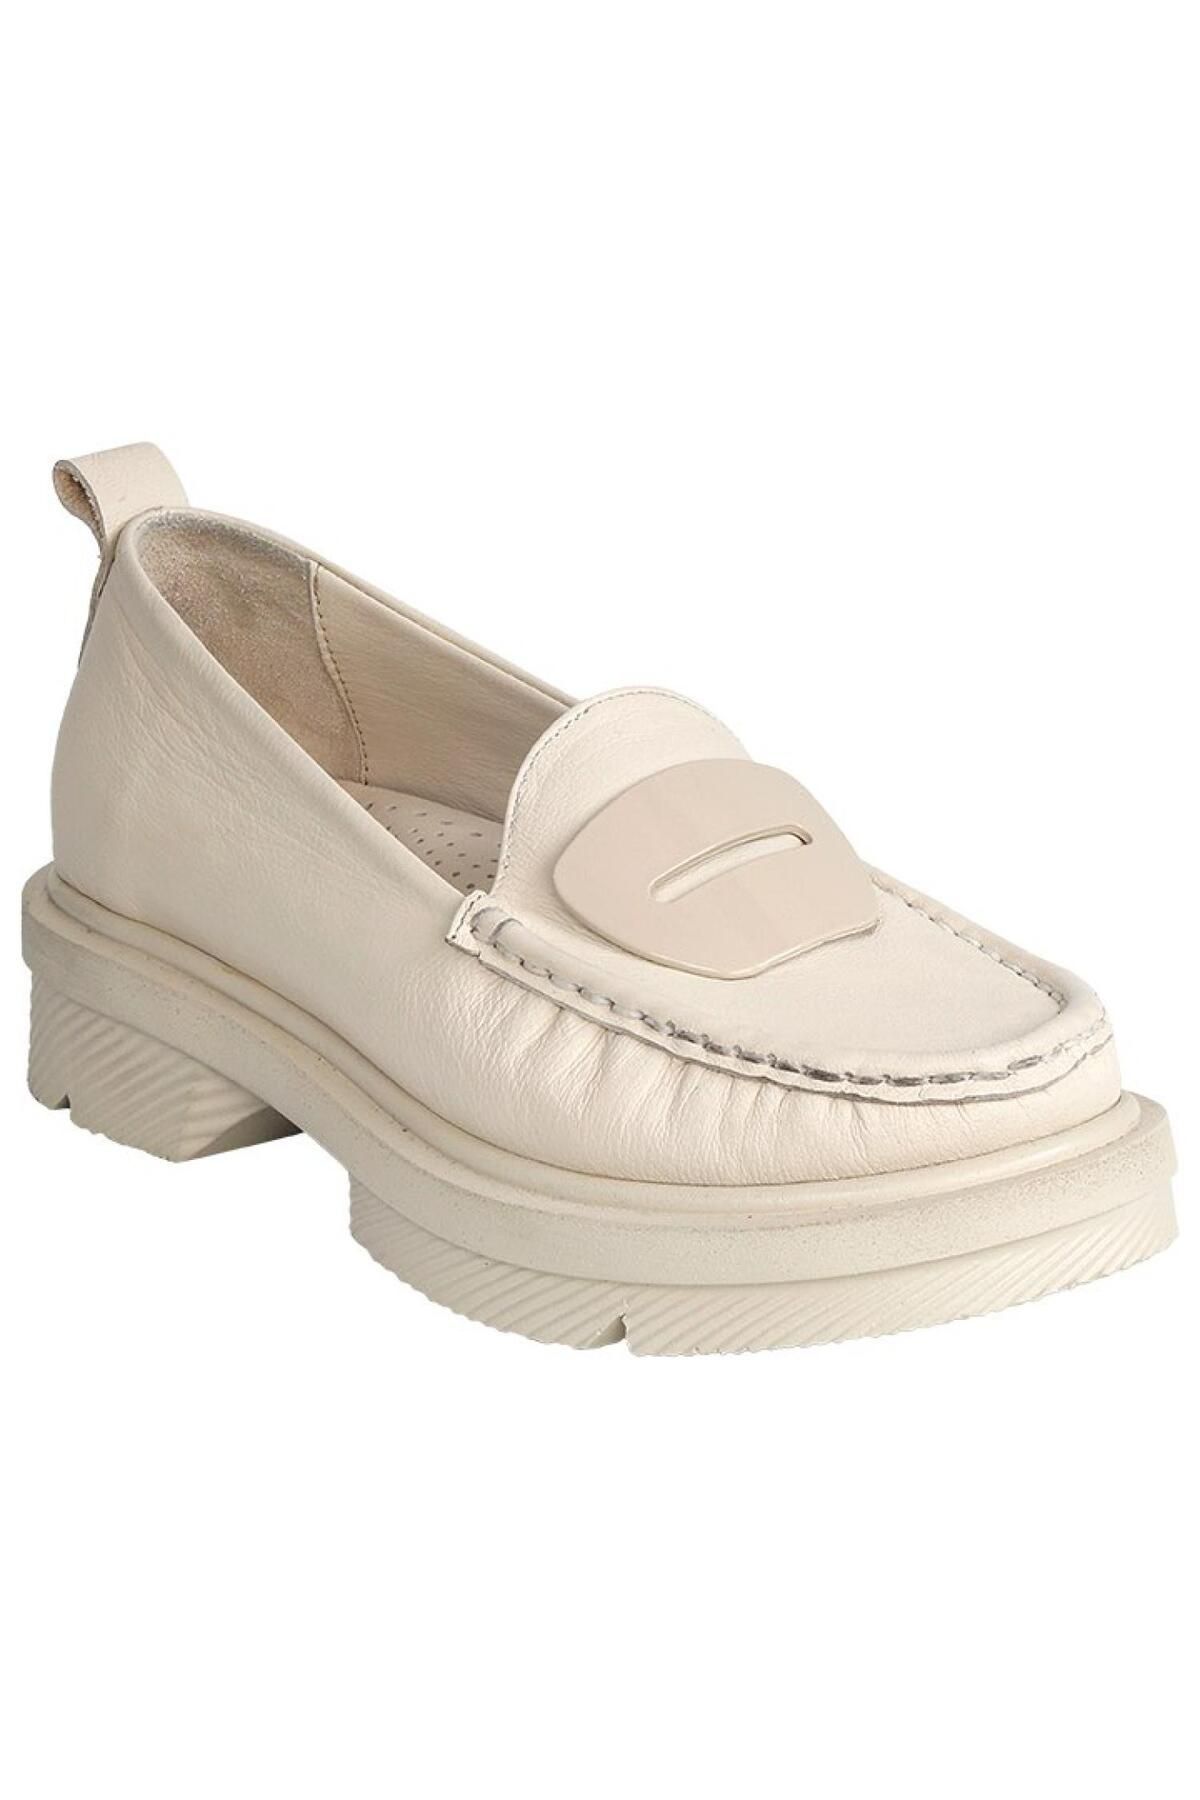 Mammamia D24Ya-850 Kadın Deri Loafer Ayakkabı